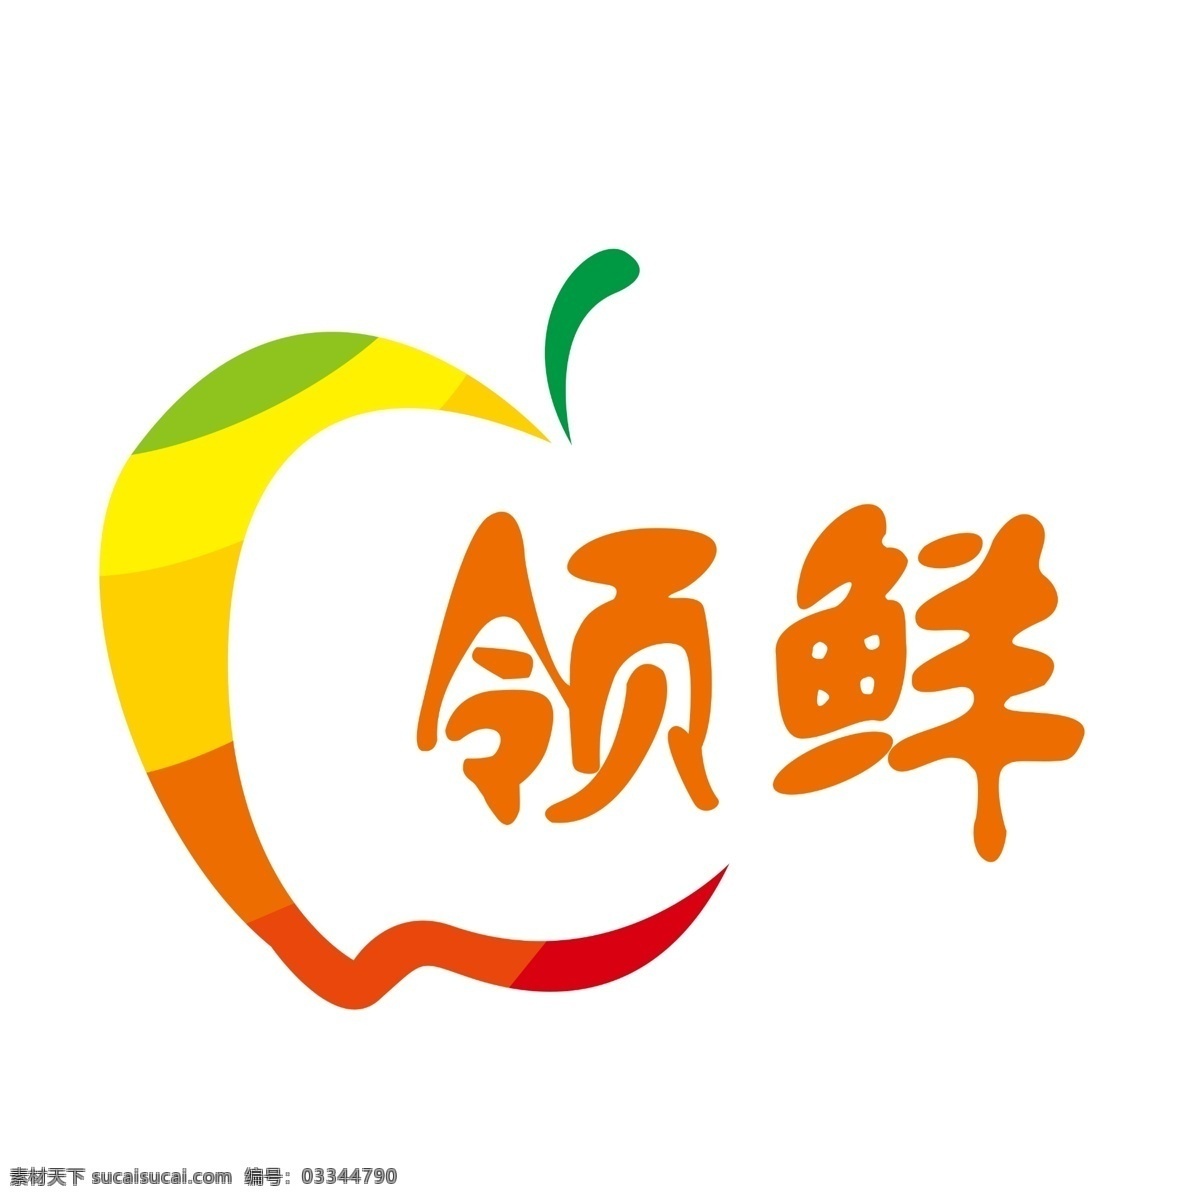 水果 超市 logo 标志 鲜艳 卡通 logo设计